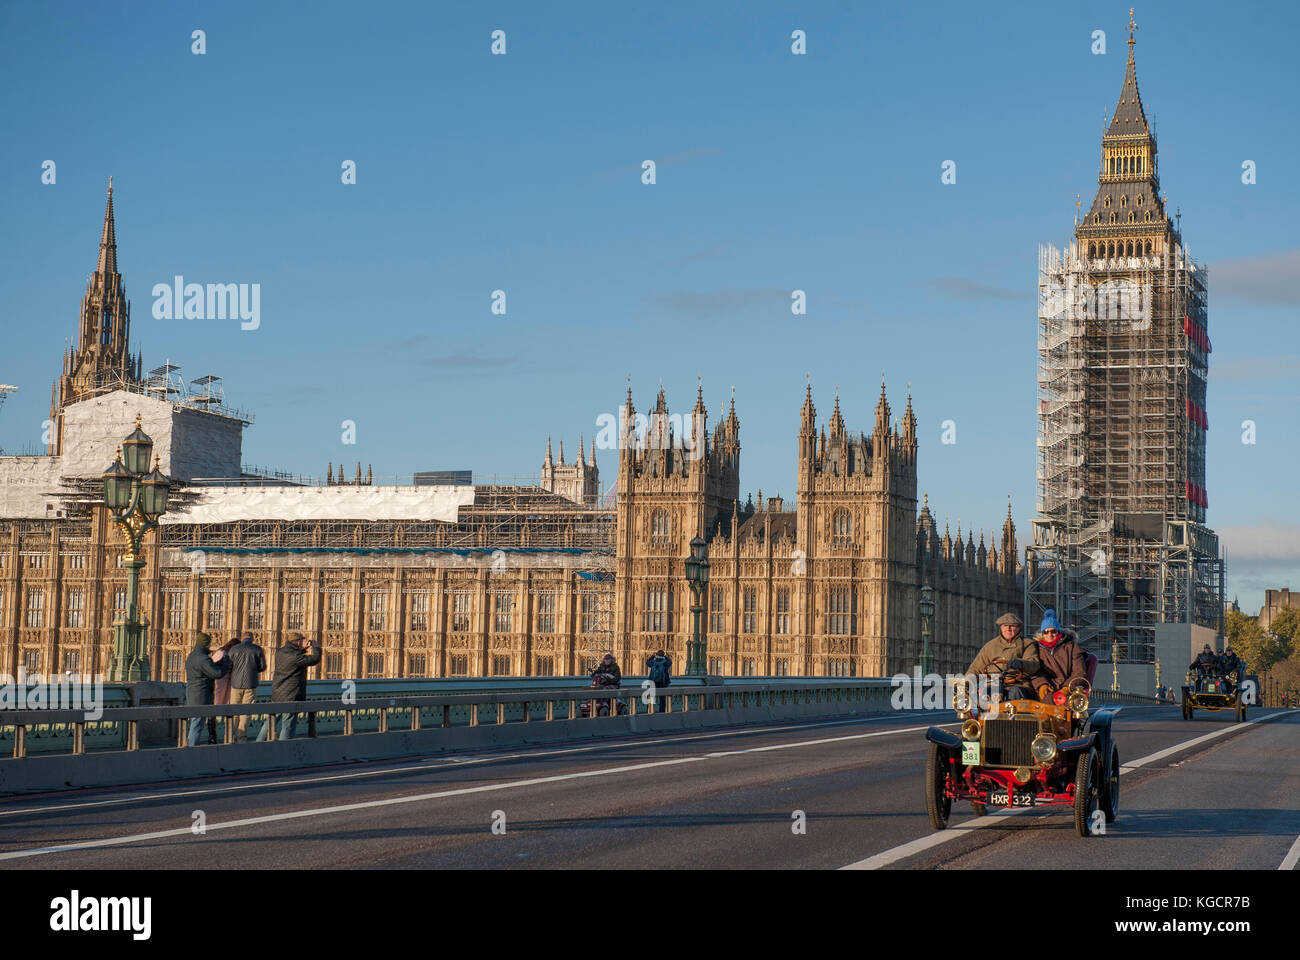 5 novembre 2017. Bonhams de Londres à Brighton, la course automobile de vétéran, la plus longue course automobile au monde, 1904 Darracq sur le pont de Westminster. Banque D'Images